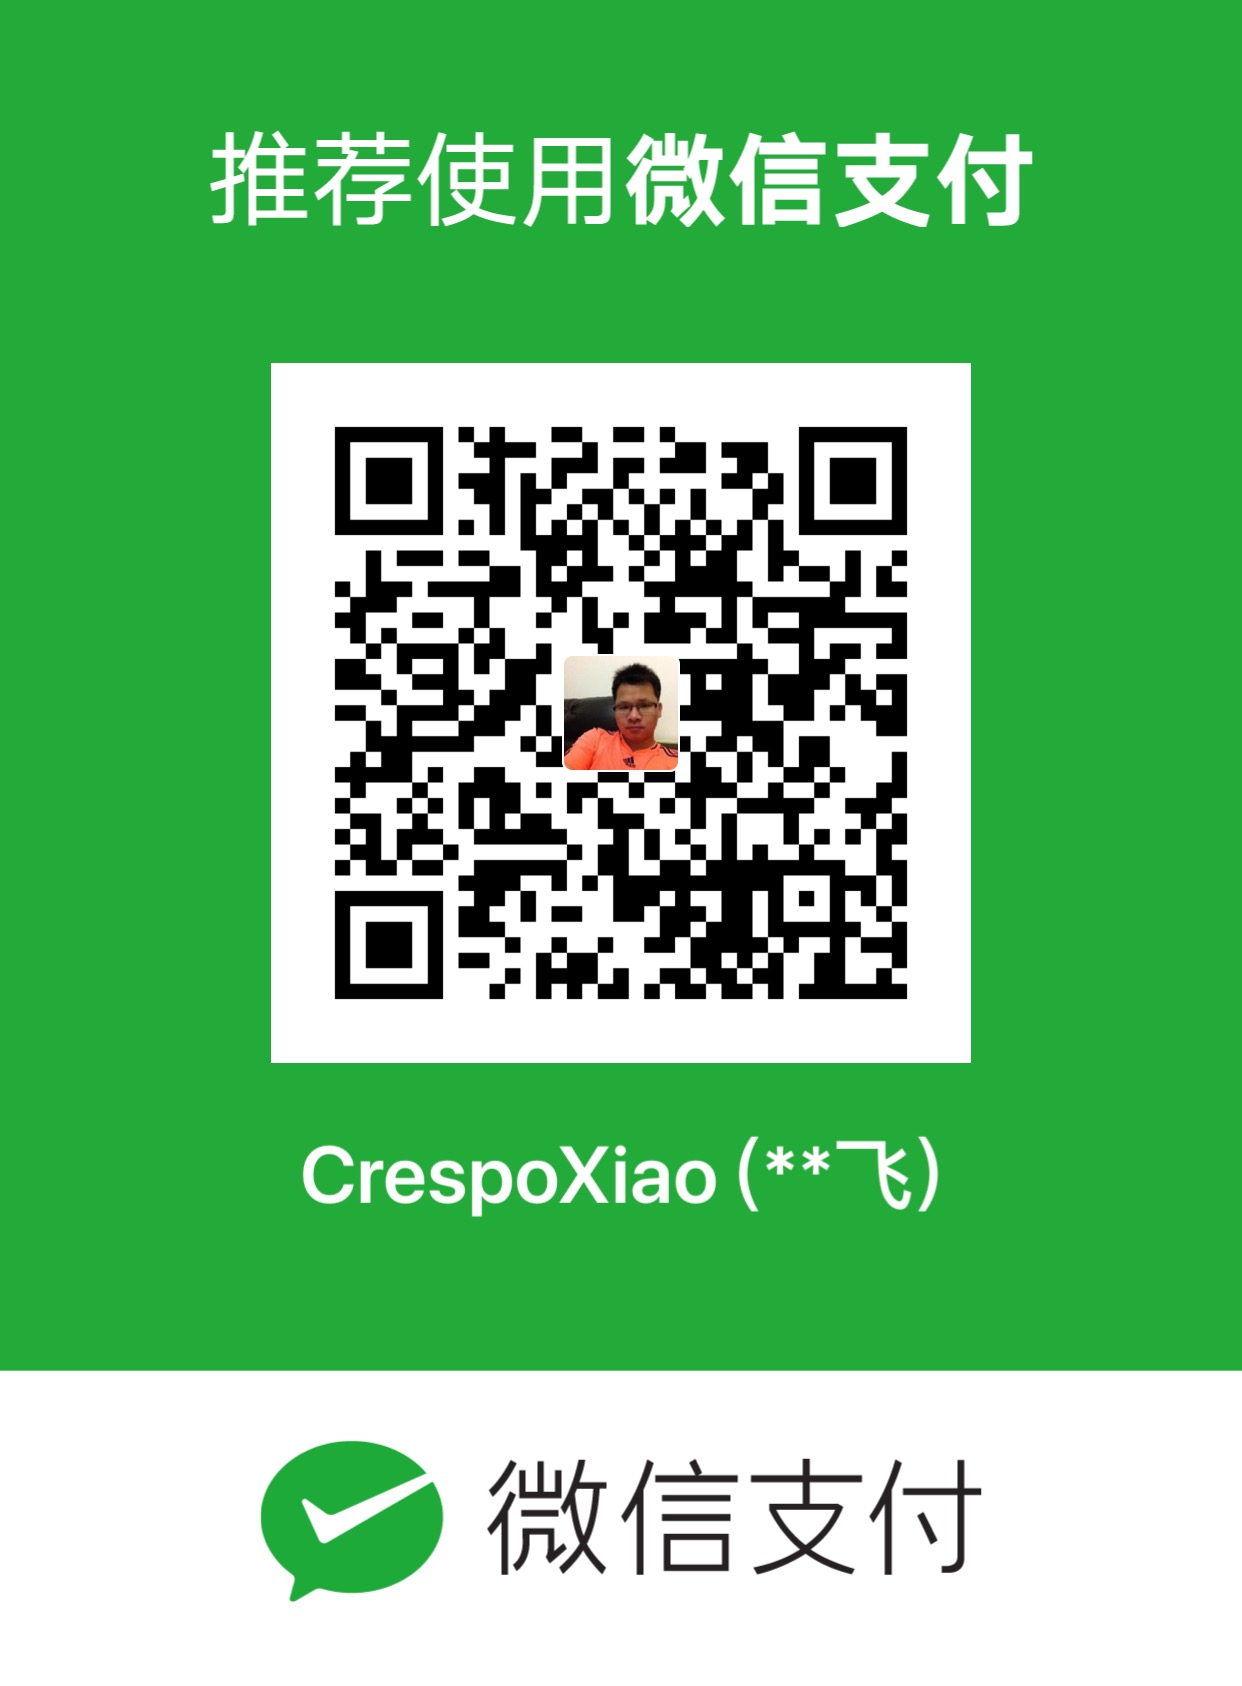 CrespoXiao 微信支付